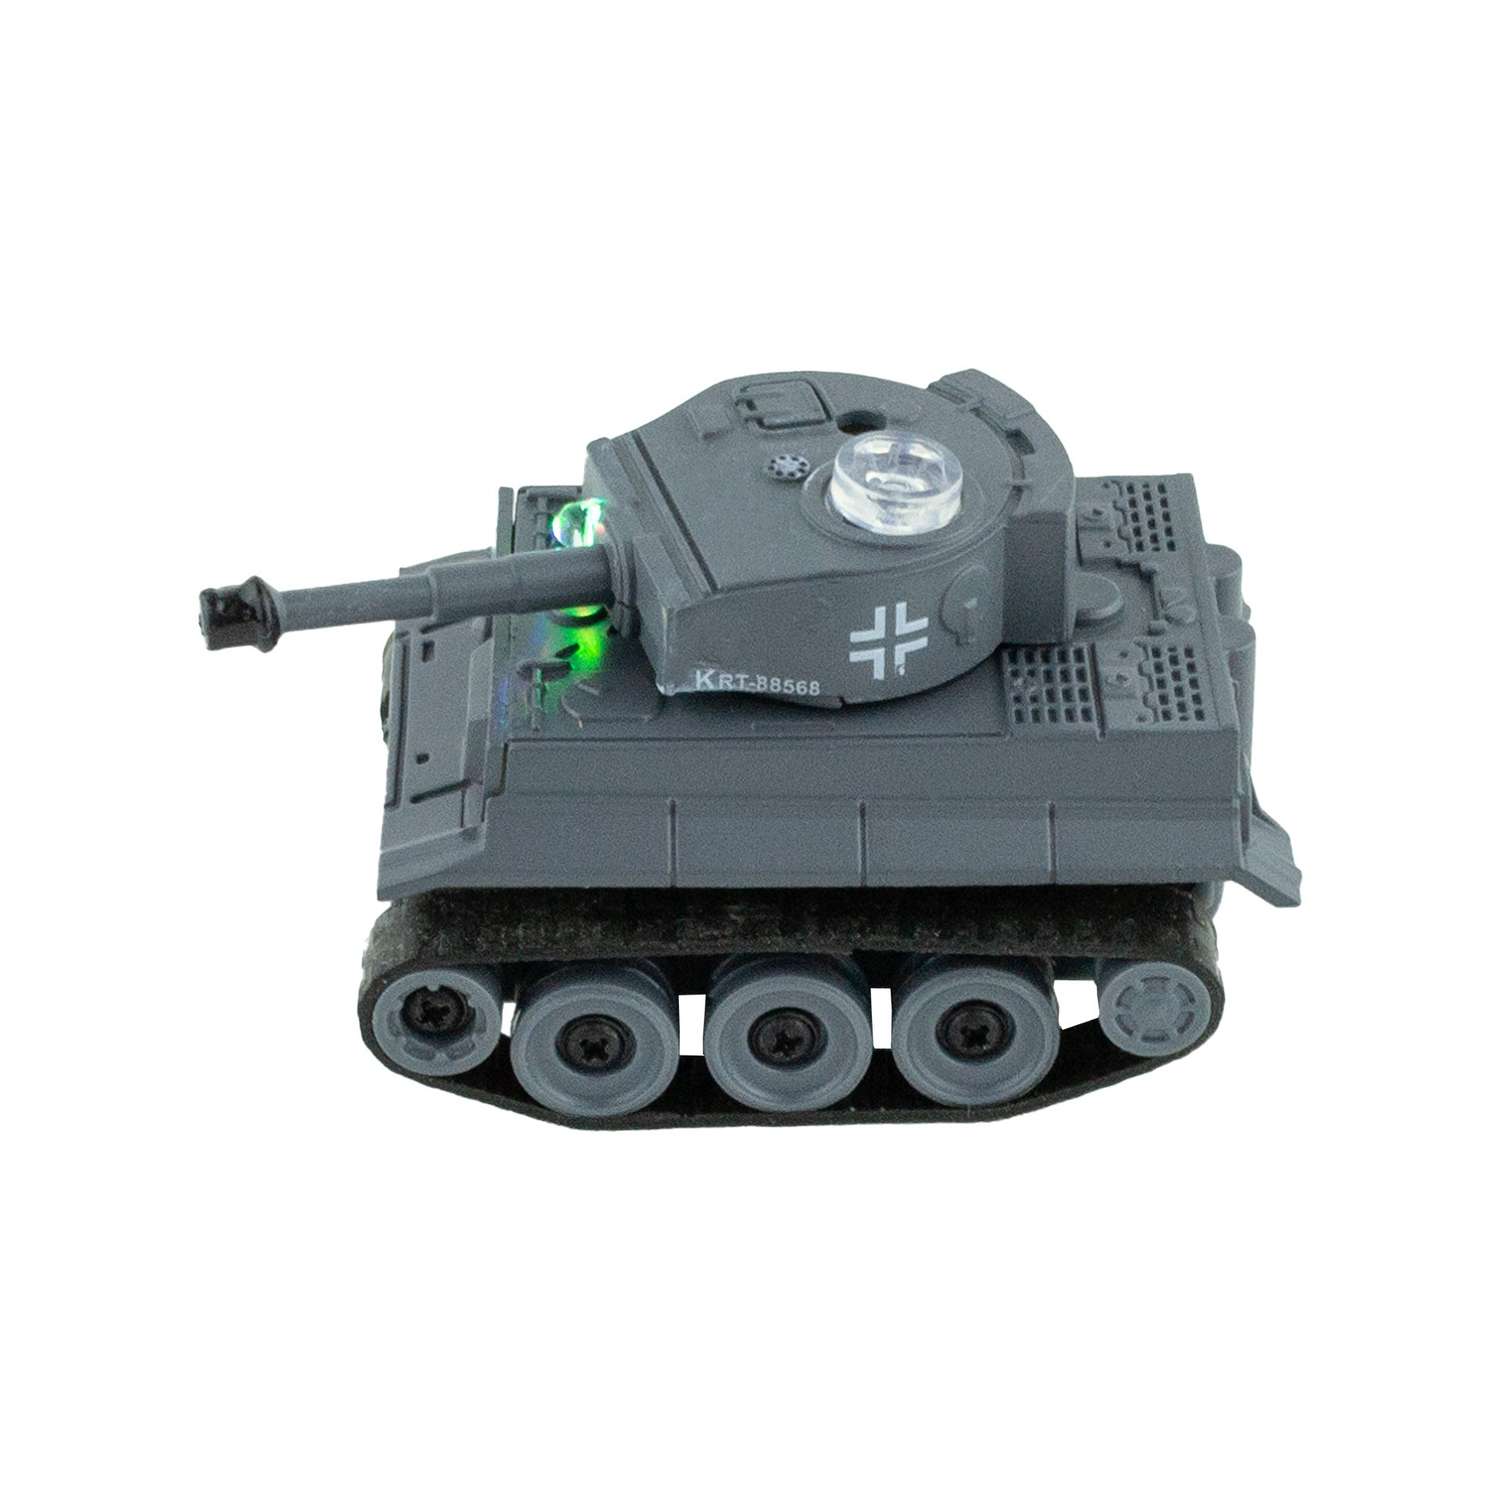 Радиуправляемый мини танк Happy Cow Тигр Grey - фото 2